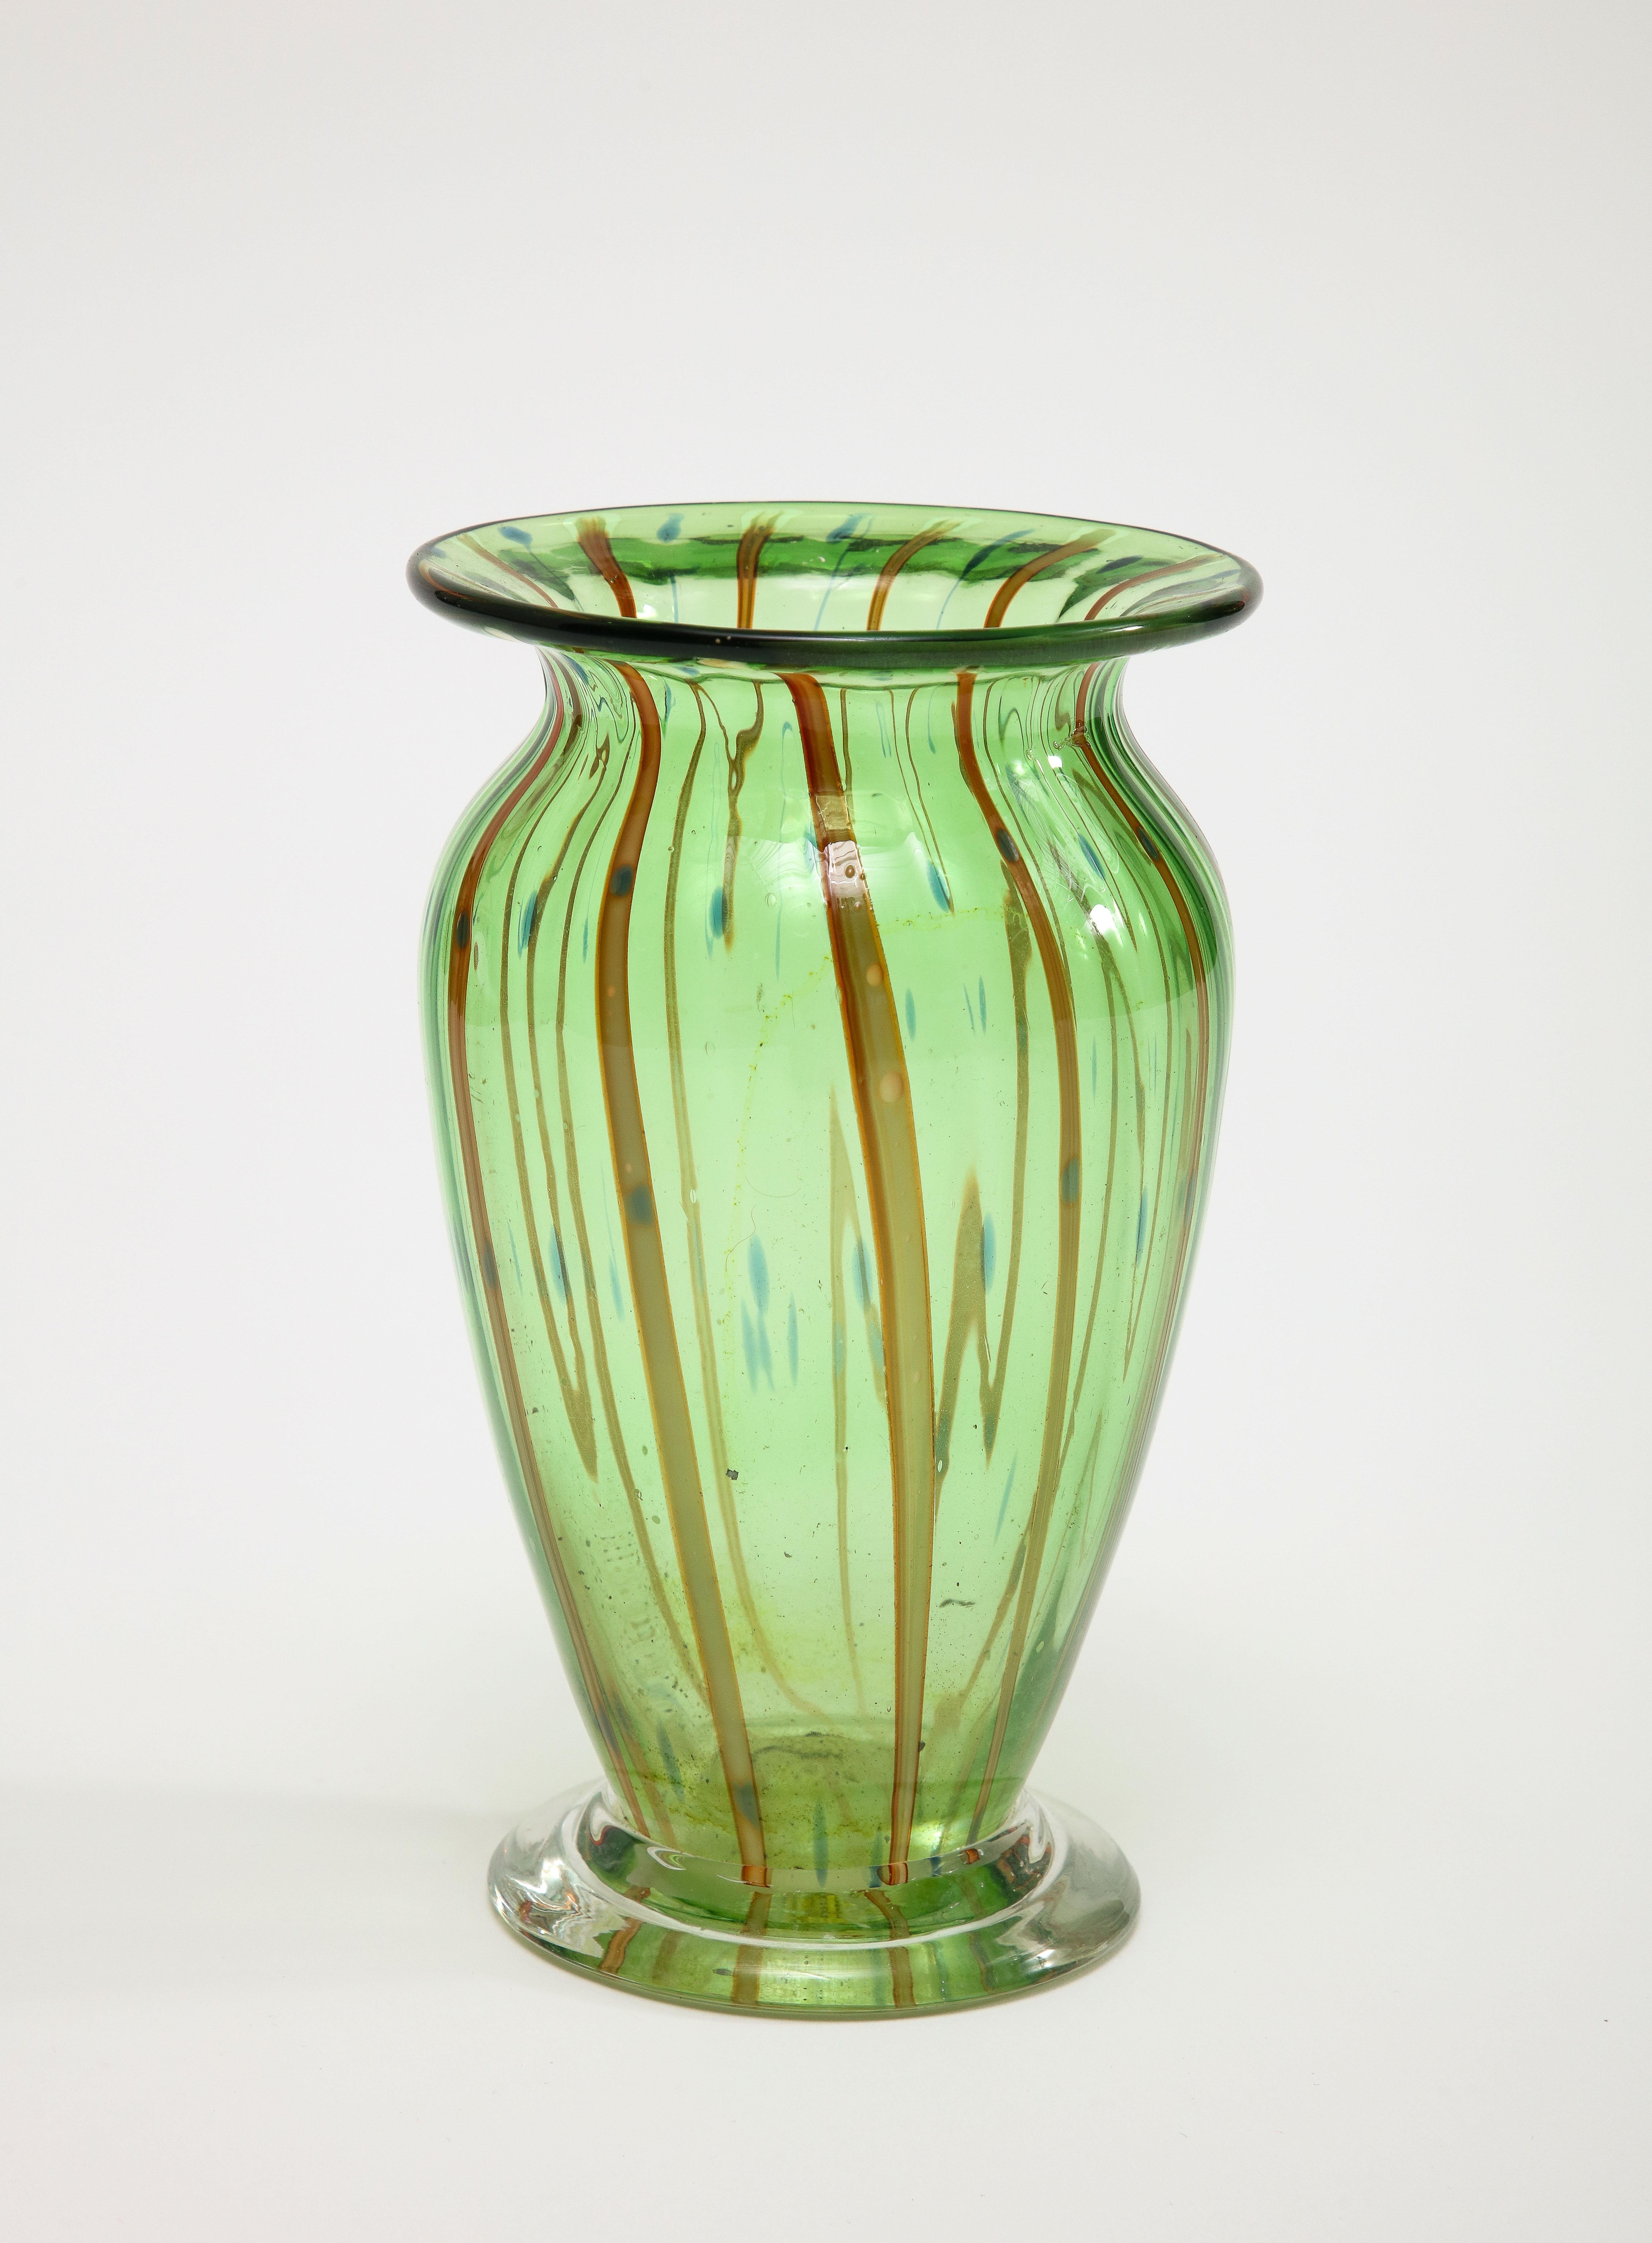 Italienische Murano-Vase aus der Mitte des Jahrhunderts, grünes mundgeblasenes Glas mit gemalten burgunderroten Streifen und blauen Punkten. 

Zusätzliche Abmessungen - 
Sockel 3,75